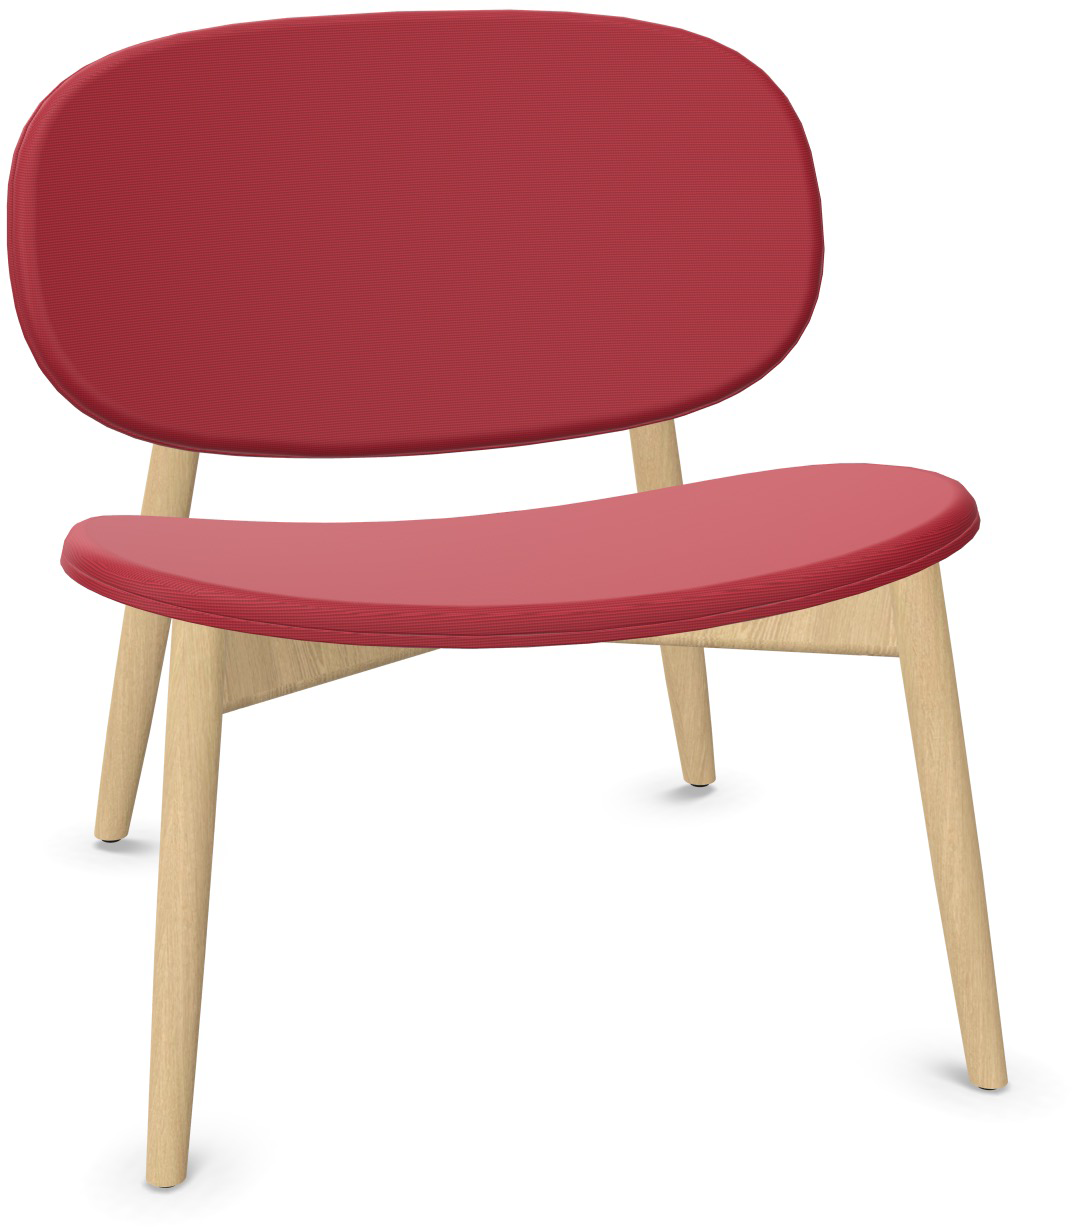 HARMO Relaxsessel in Dunkelrot präsentiert im Onlineshop von KAQTU Design AG. Sessel ist von Infiniti Design